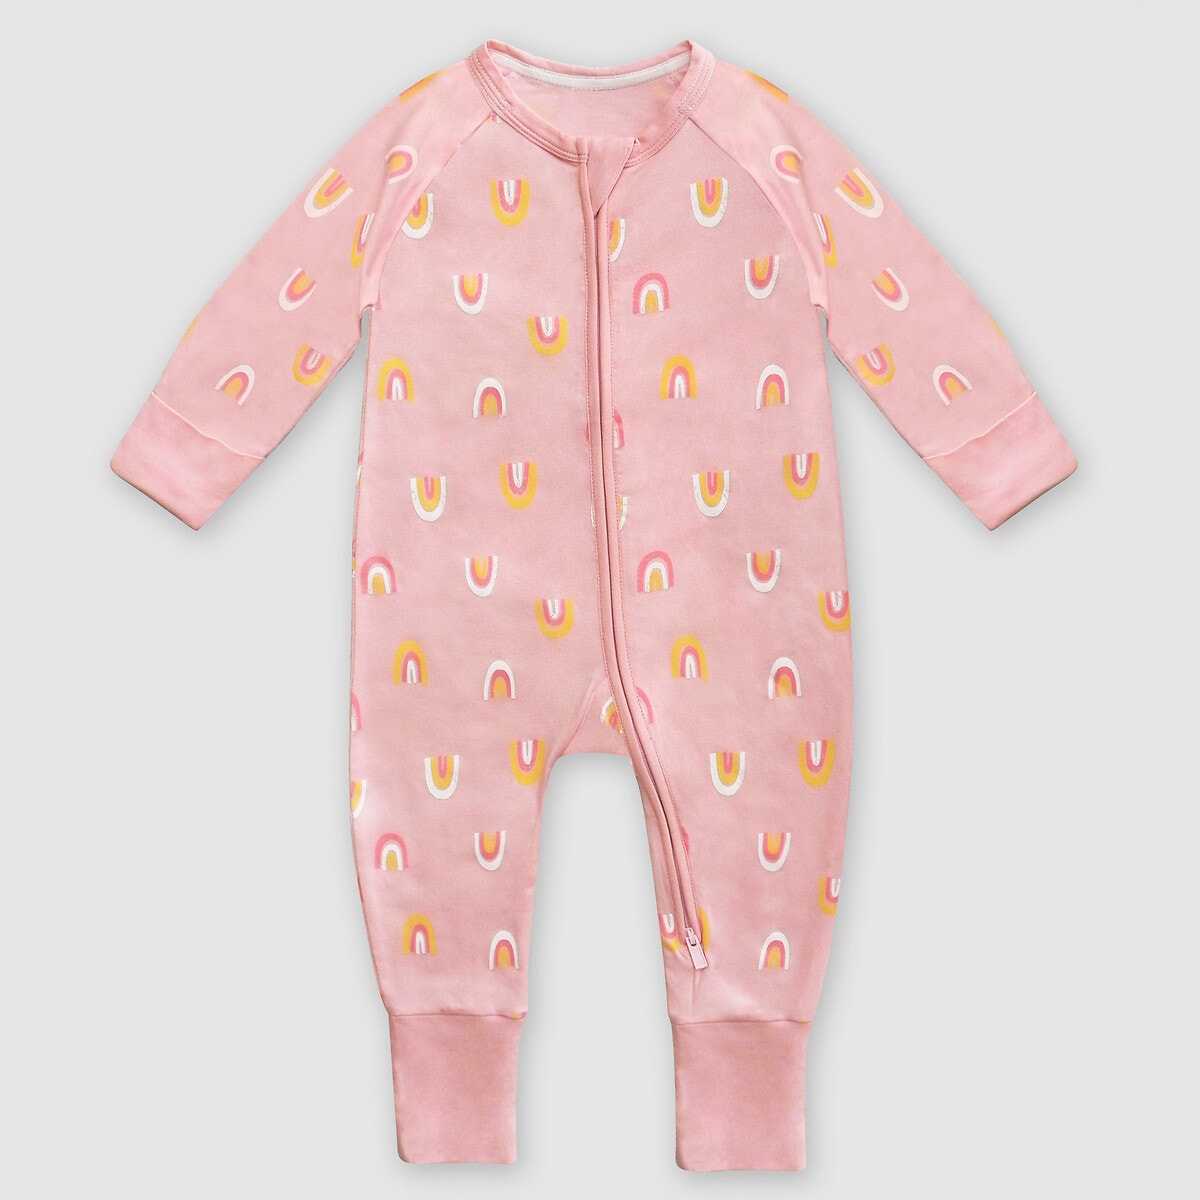 ΠΑΙΔΙ | Βρεφικά | Πυτζάμες Πιτζάμα με φερμουάρ, 1 μηνός - 2 ετών